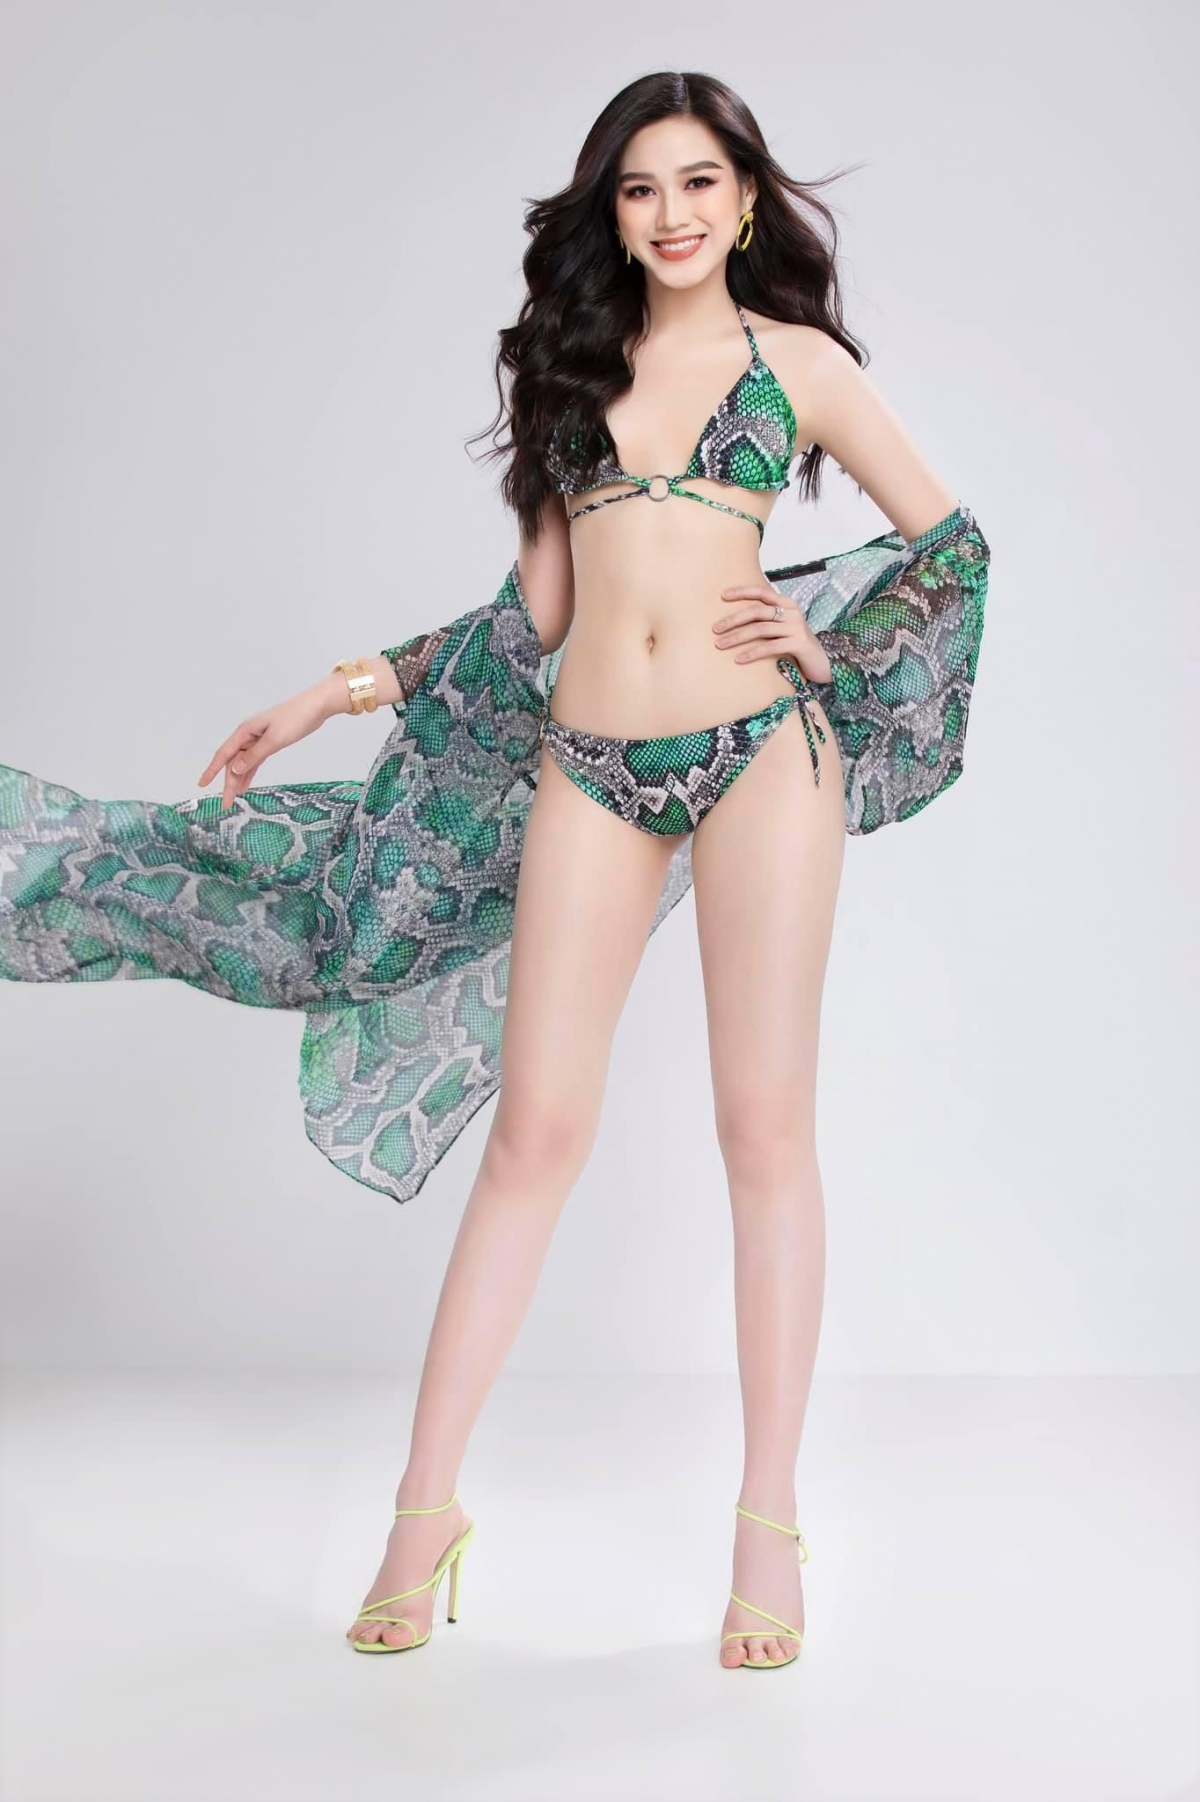 Hoa hậu Đỗ Thị Hà nóng bỏng trong bộ ảnh bikini họa tiết da rắn - Ảnh 2.